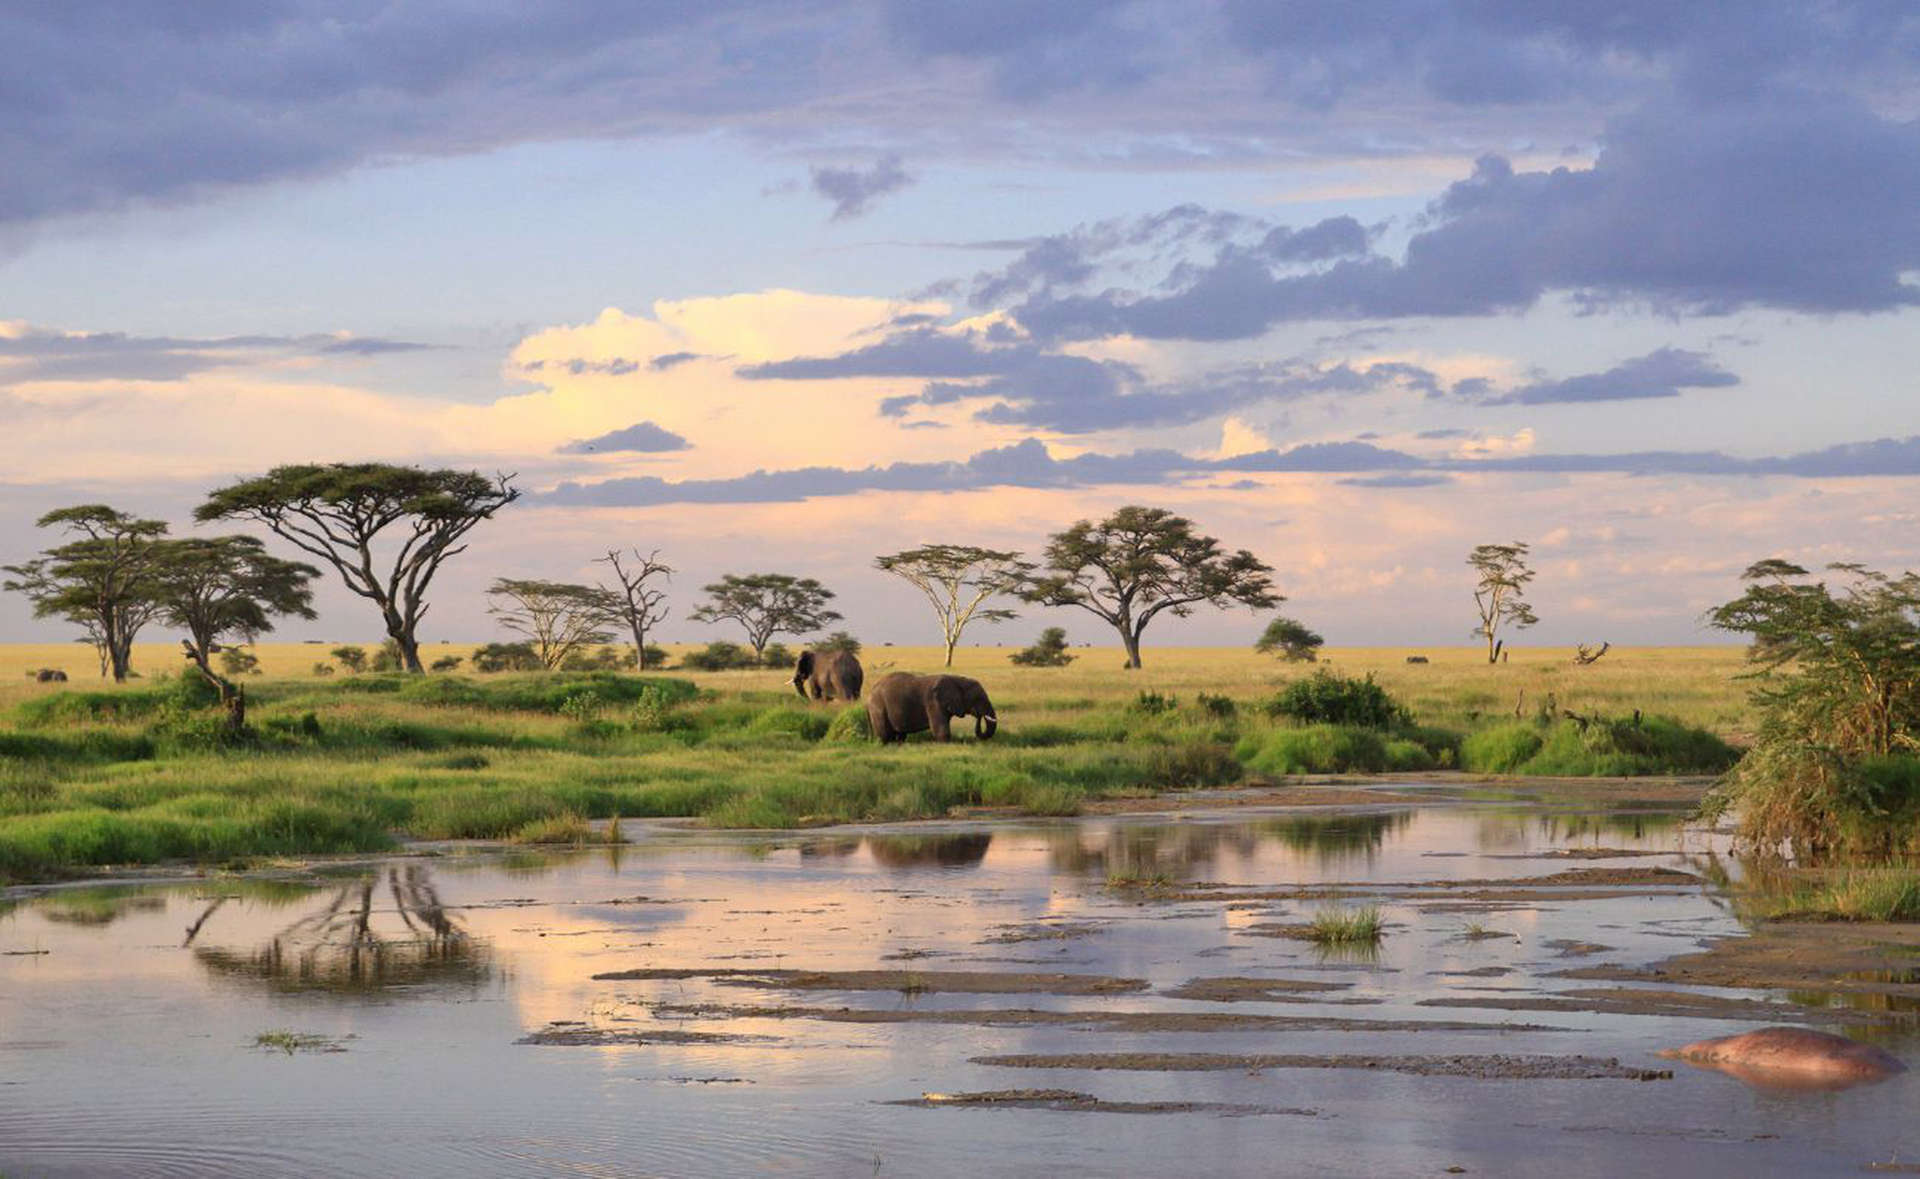 Un safari en enero en Tanzania definitivamente no le decepcionará